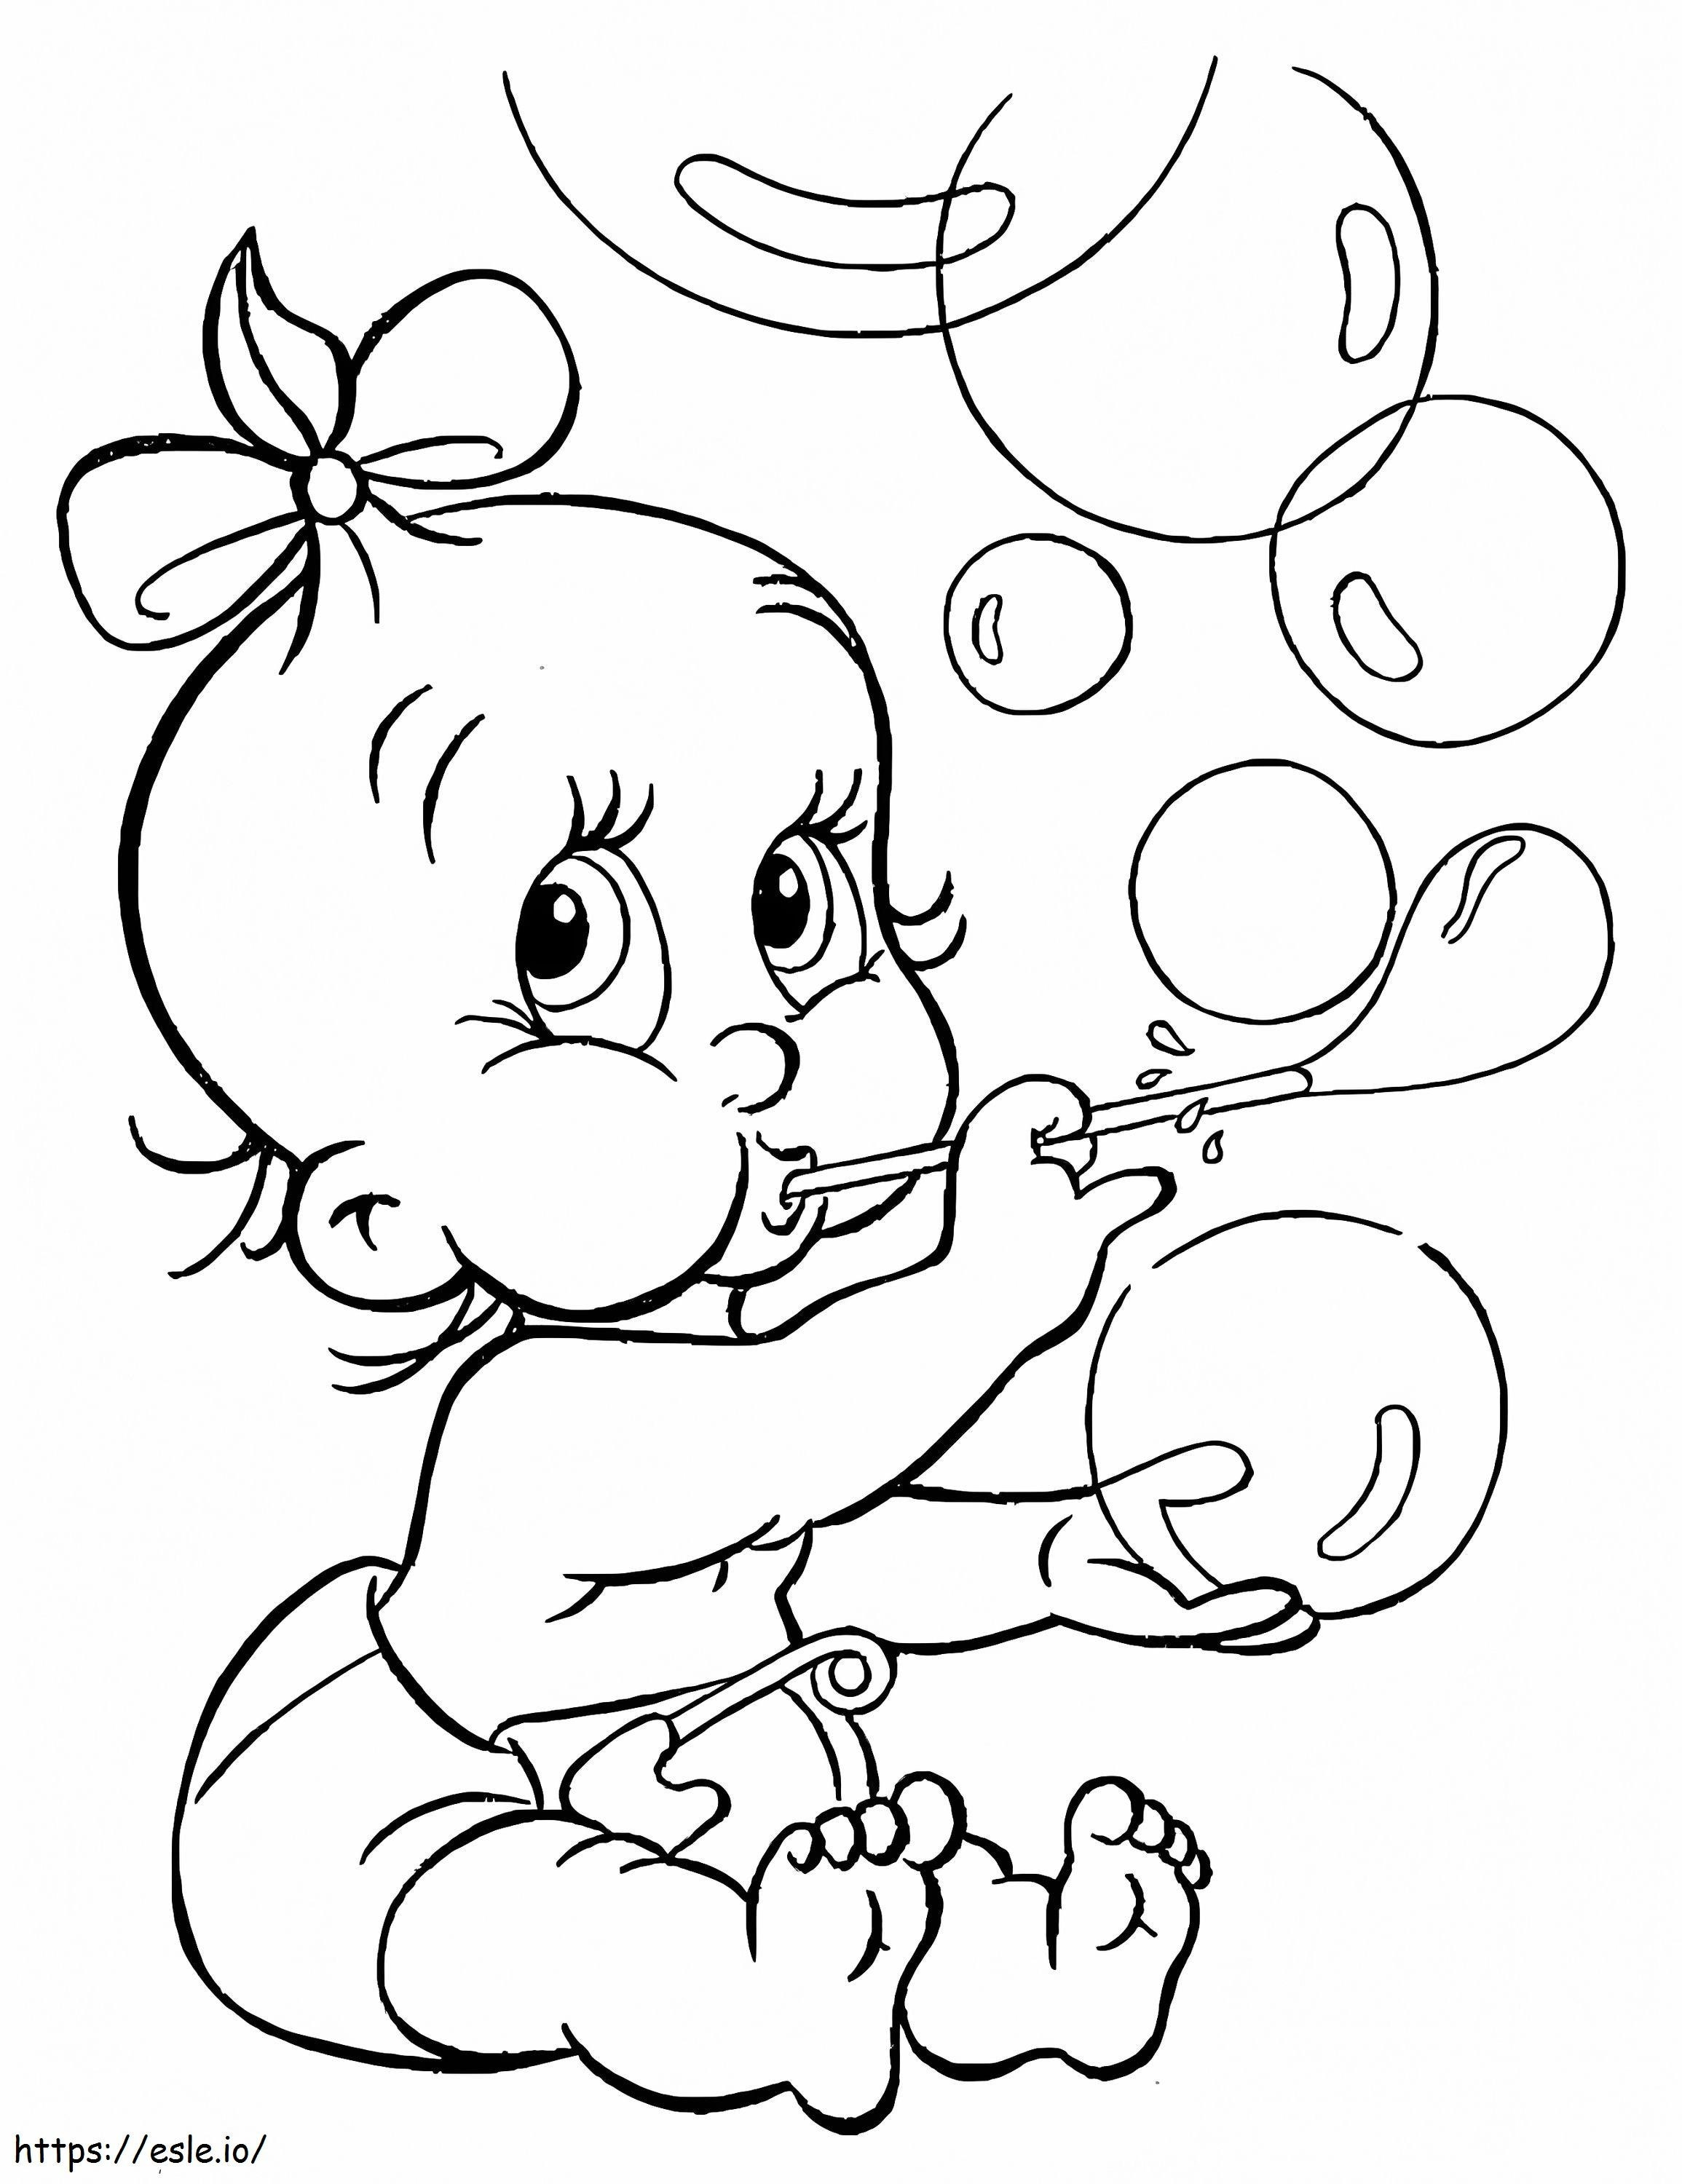 Coloriage Petite fille et bulles à imprimer dessin